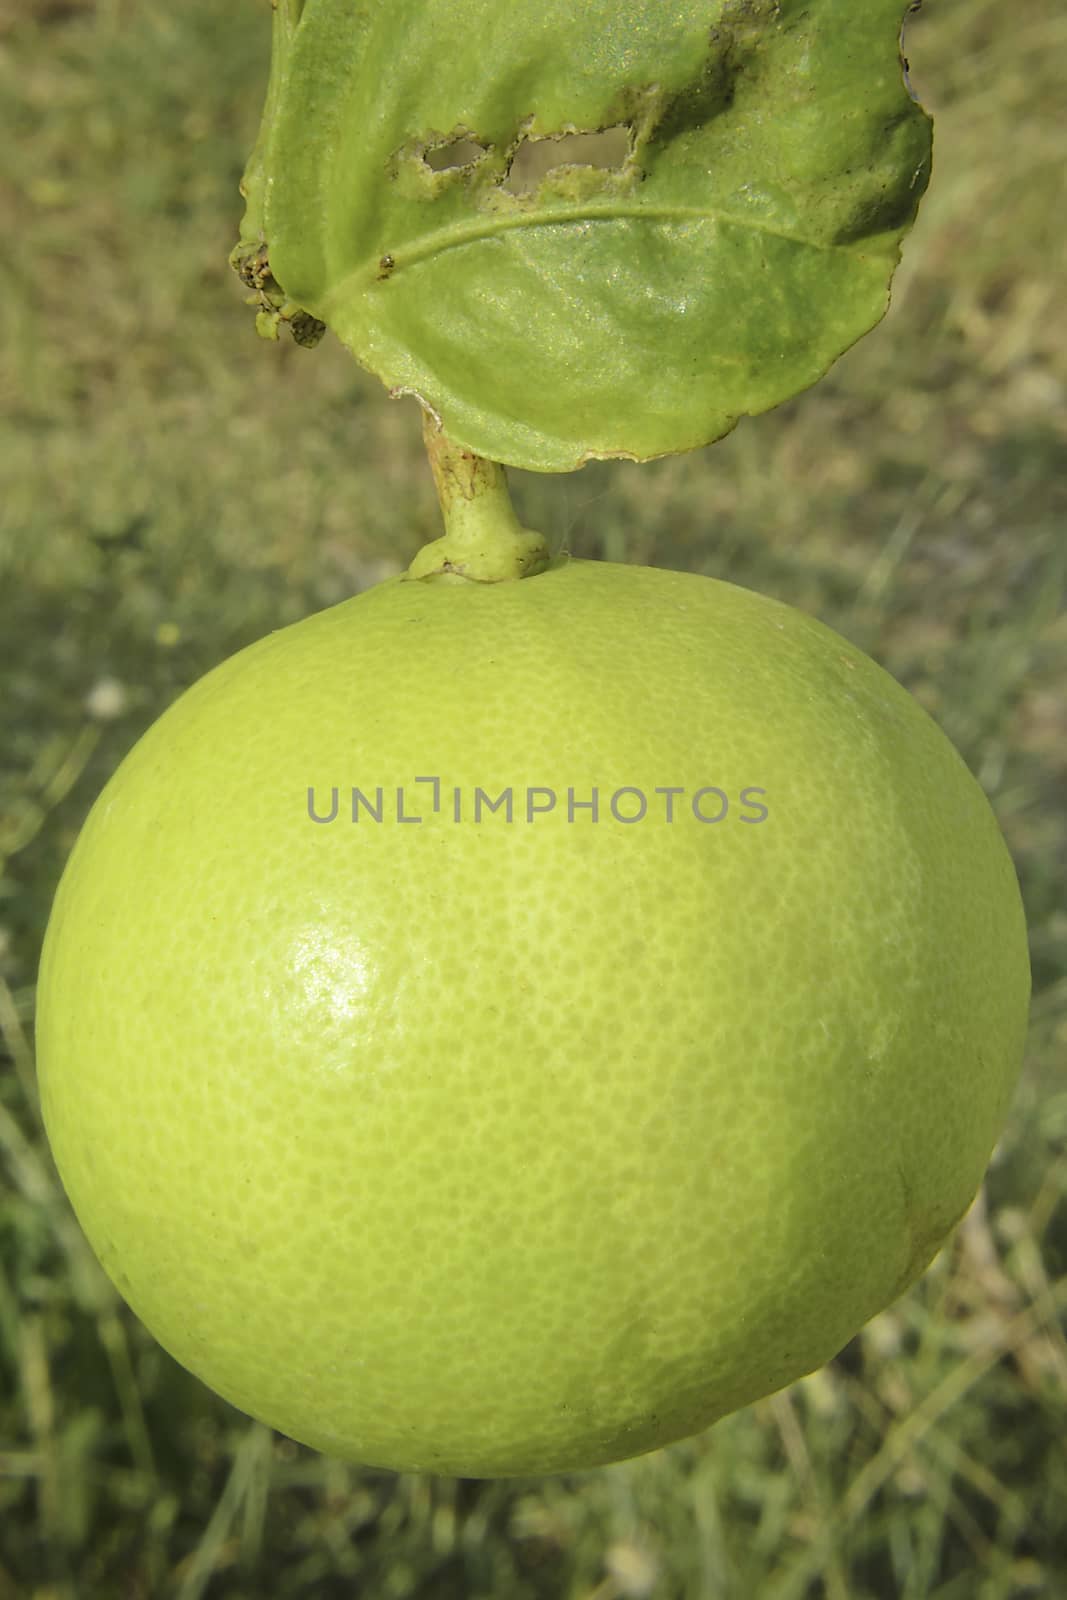 The Green Lemon Fruit hang on a tree